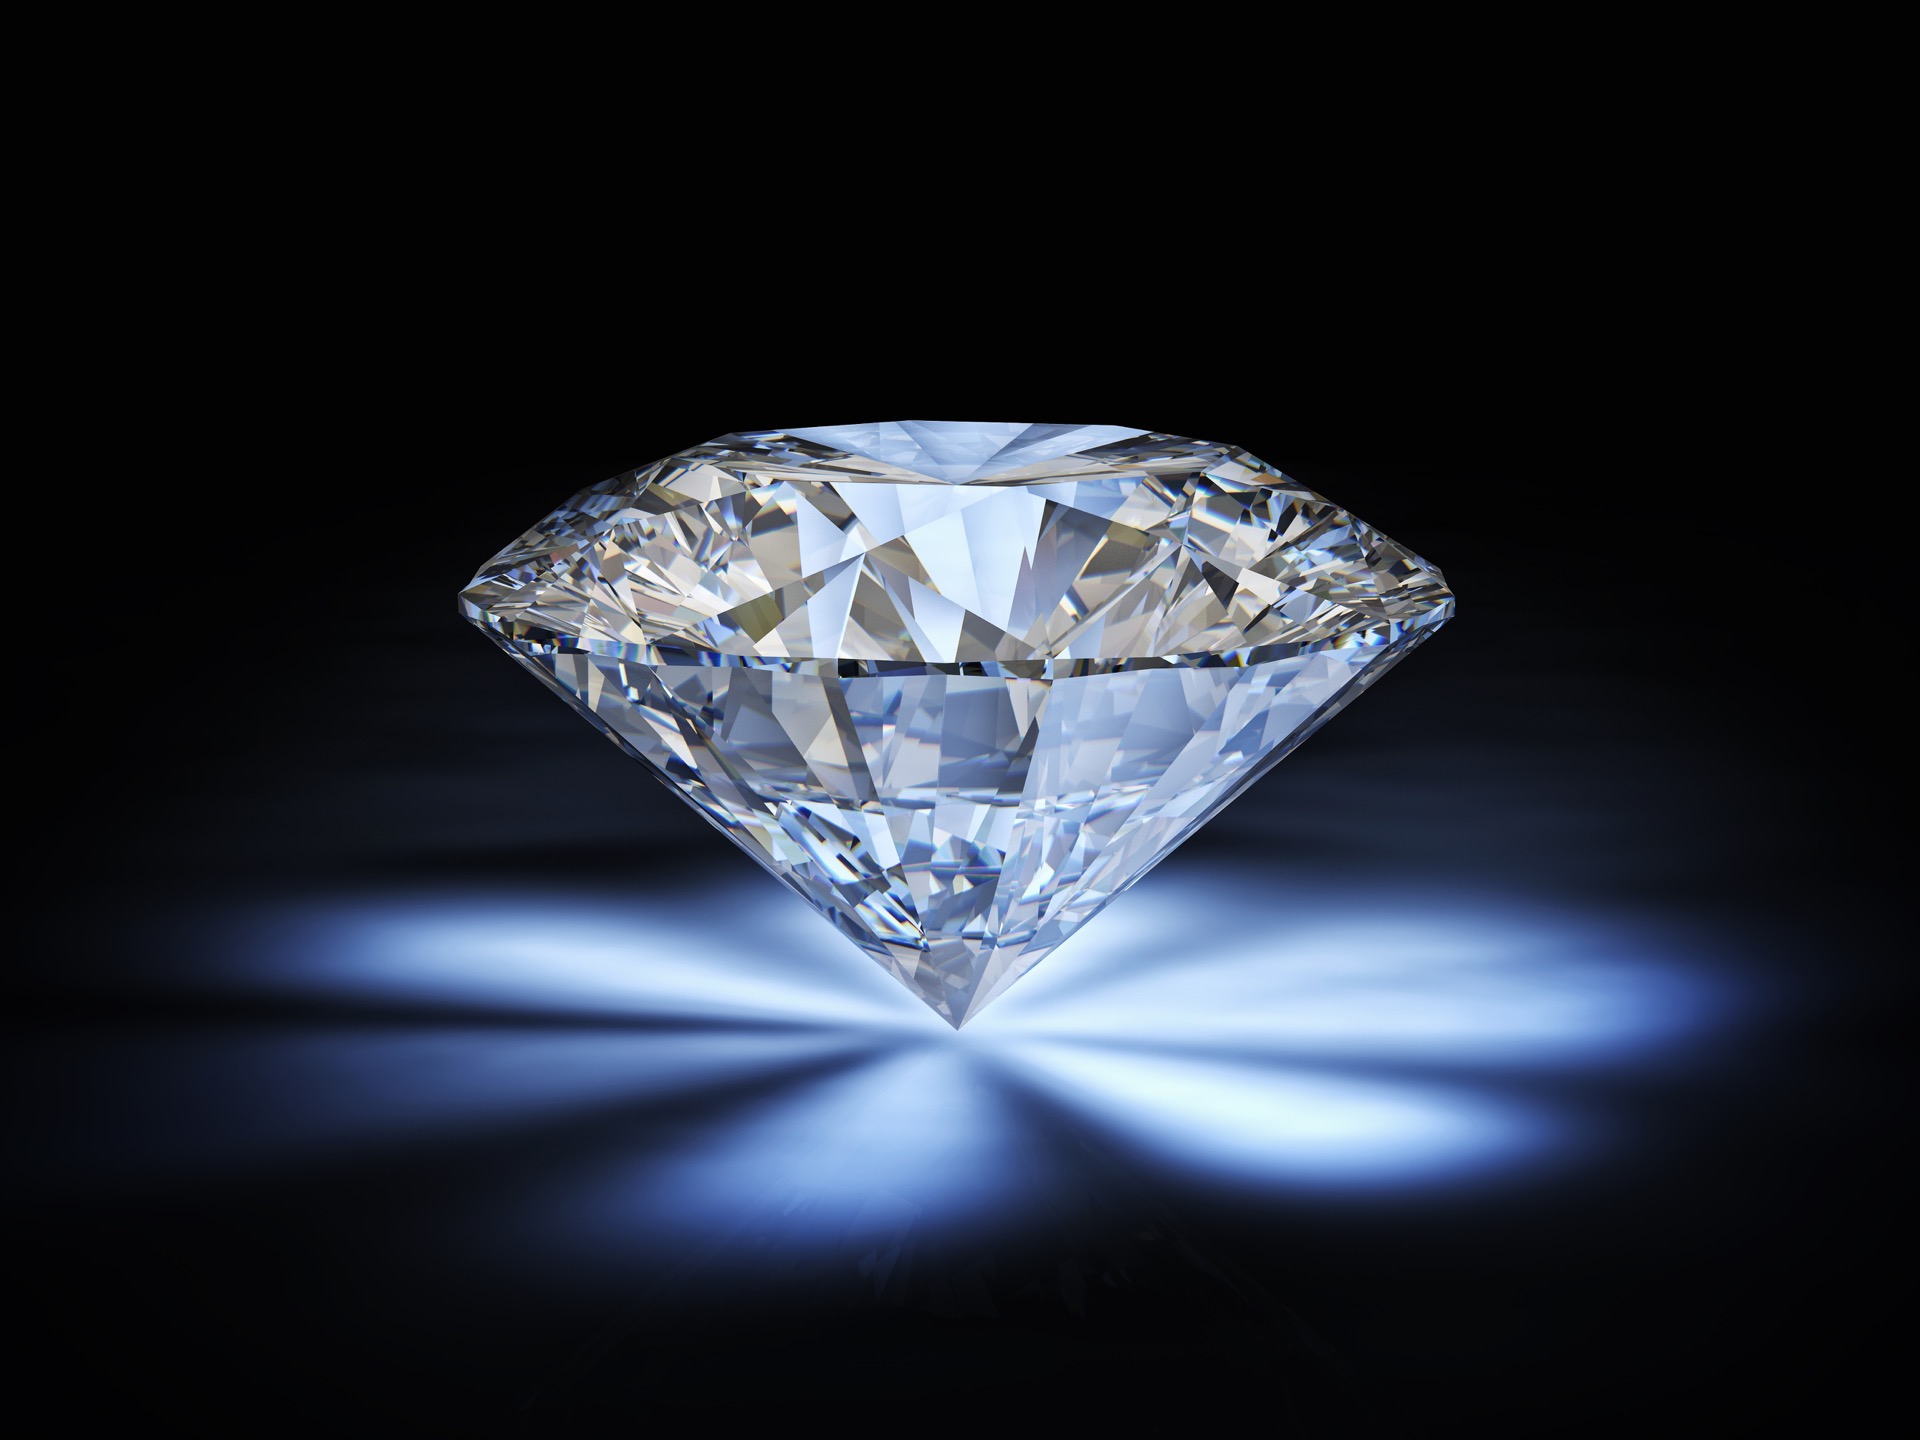 Vente aux enchères exceptionnelle d'un diamant de 100 carat payable en cryptomonnaie. ©&nbsp;tiero, Adobe Stock